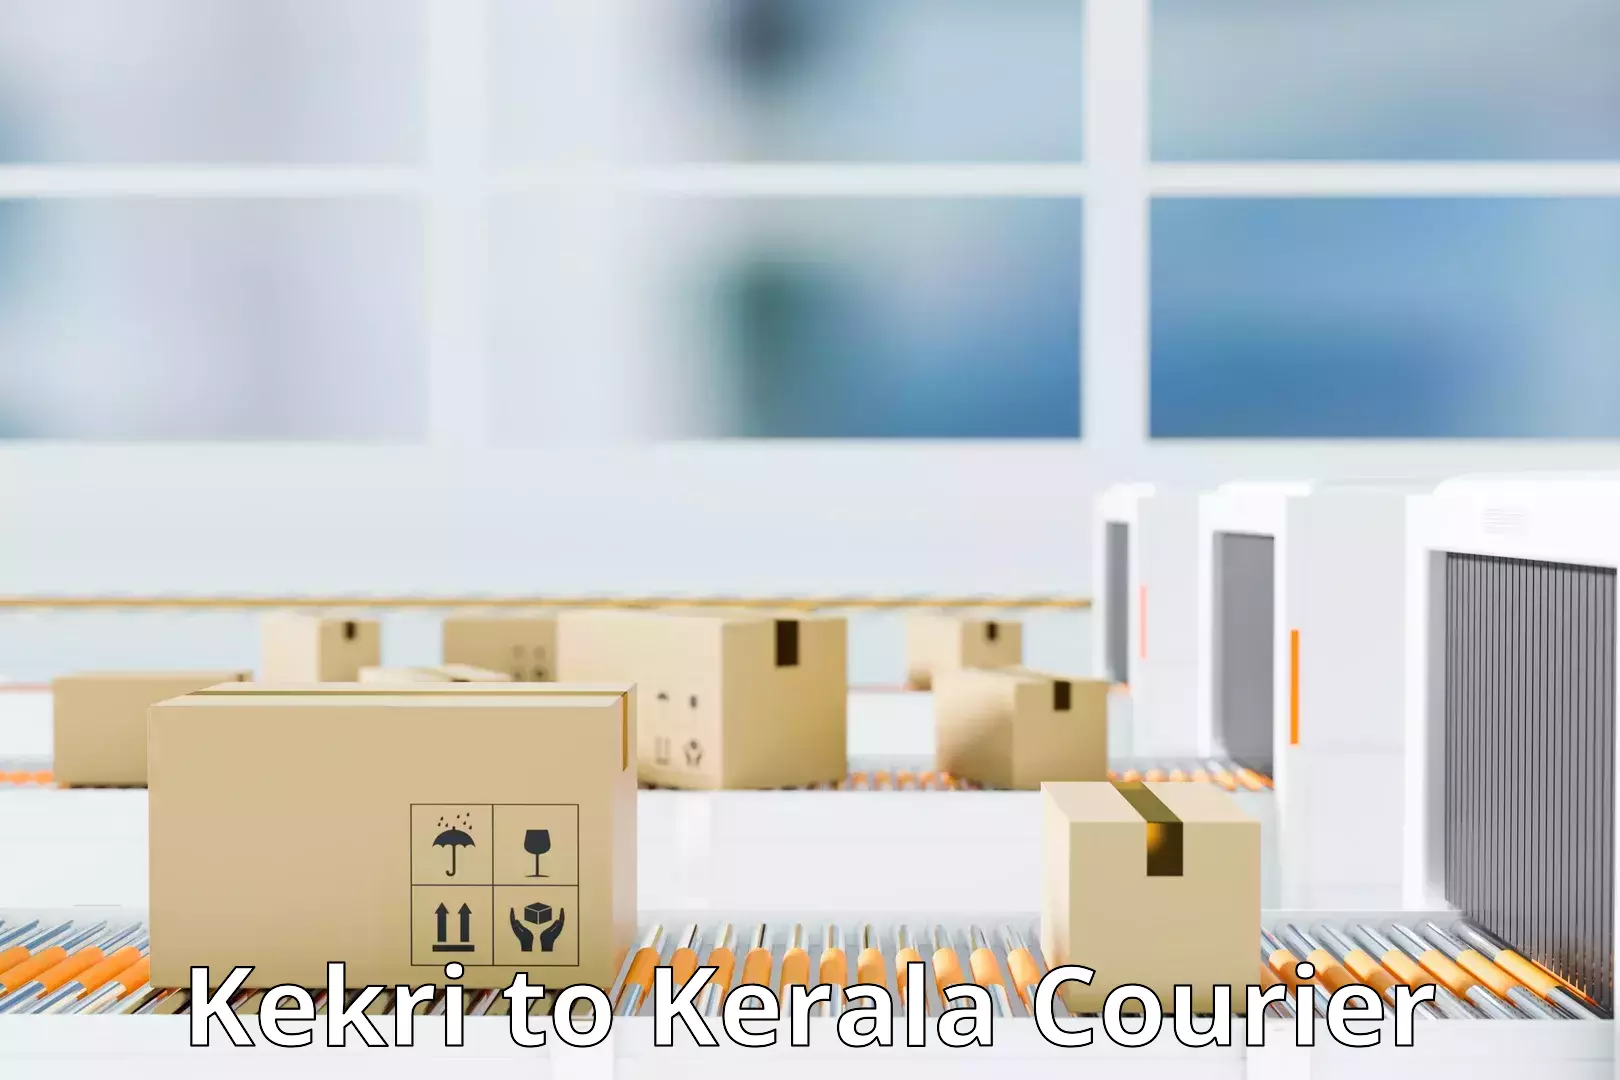 Efficient parcel transport Kekri to Mananthavady